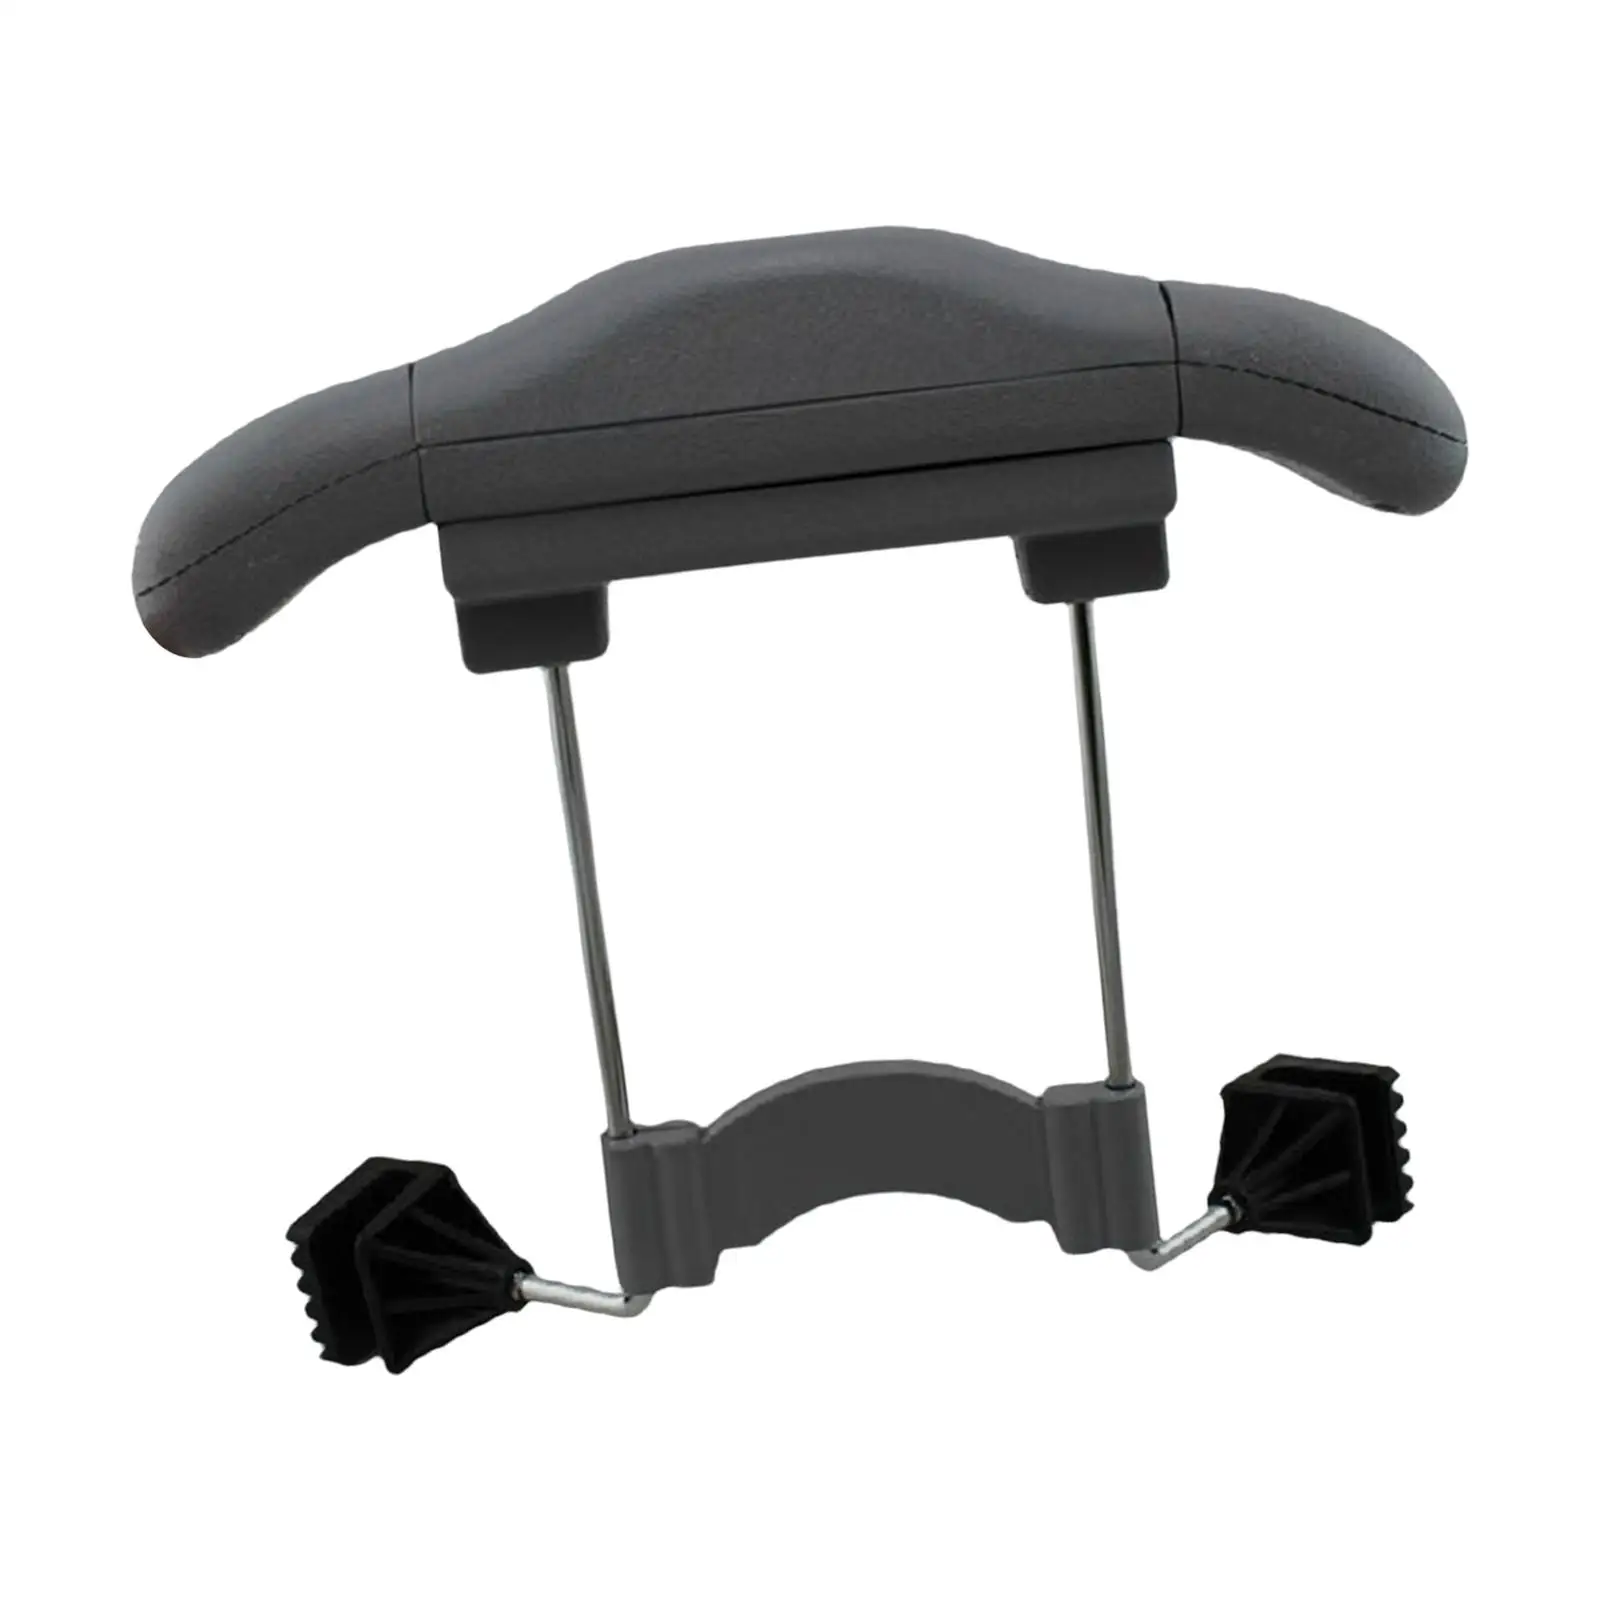 Car Seat Hanger Holder Car hook for headrest Holder for Vests Suit Handbags